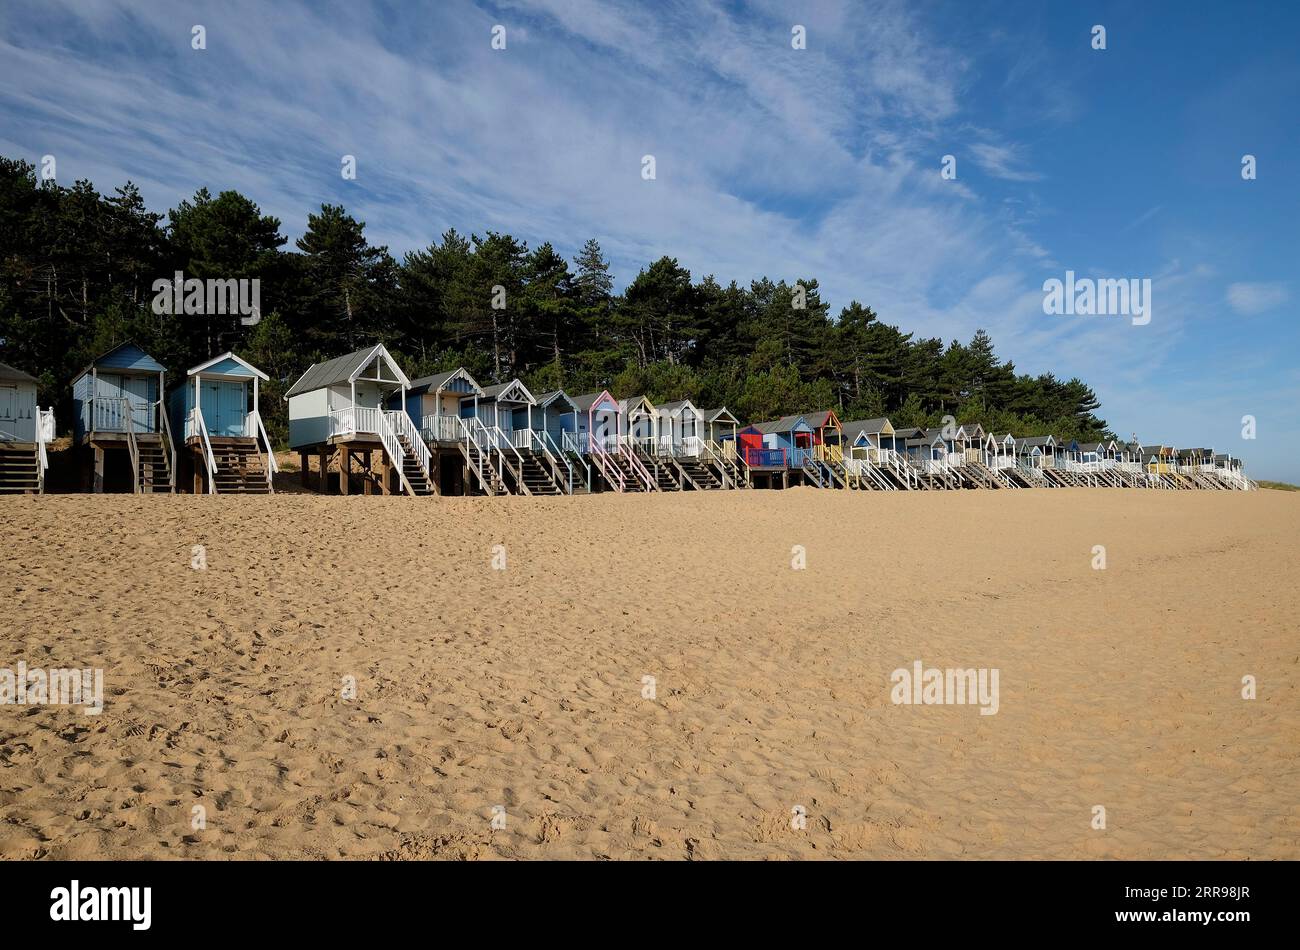 cabanes de plage colorées, puits à côté de la mer, nord de norfolk, angleterre Banque D'Images